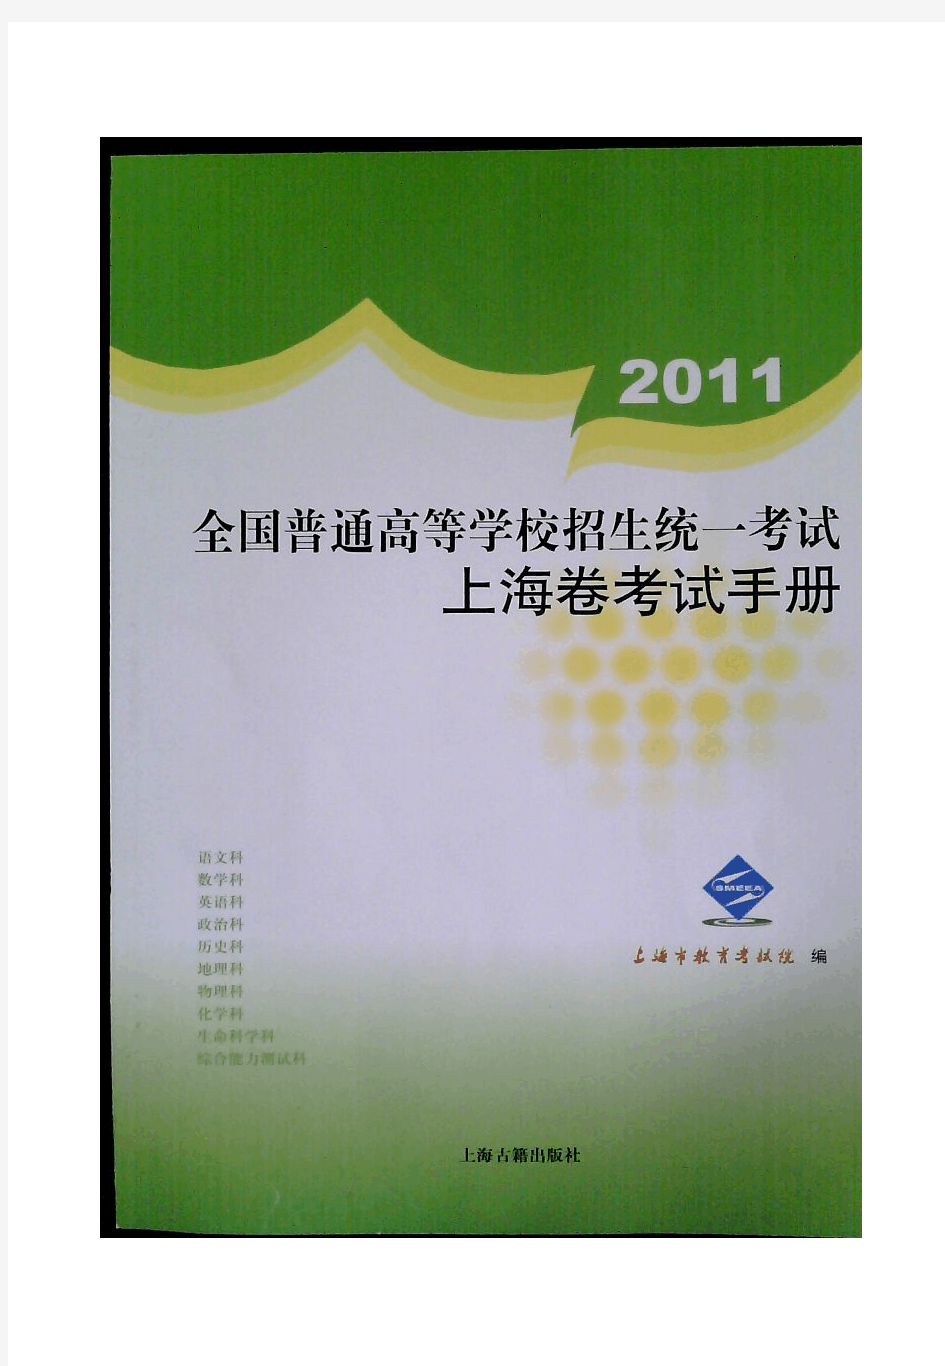 2011年上海高考考纲(完整pdf版)物理